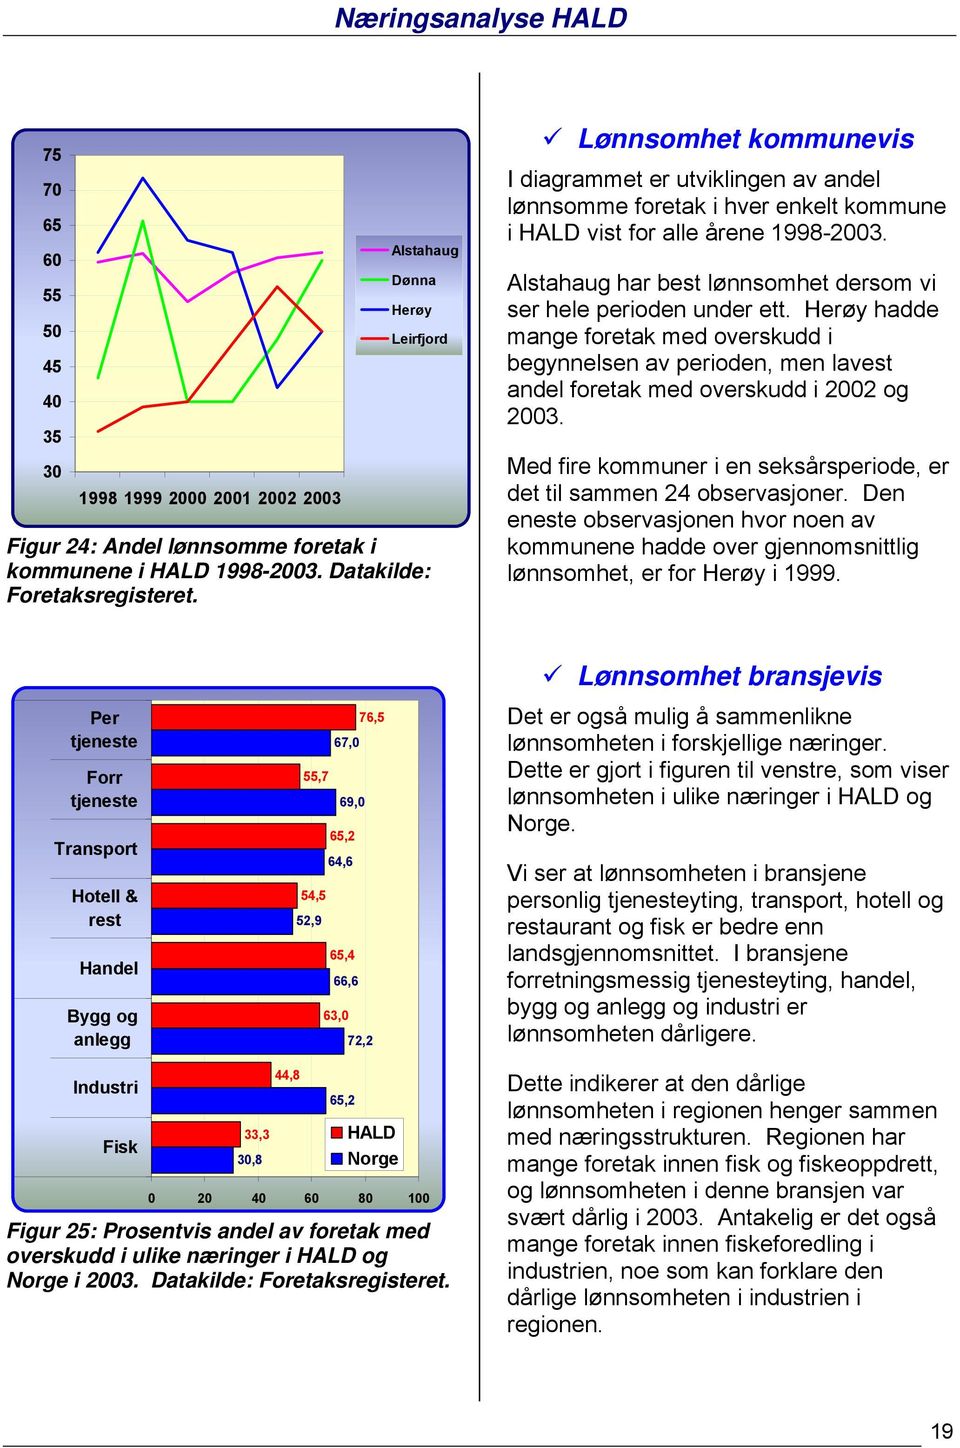 Herøy hadde mange foretak med overskudd i begynnelsen av perioden, men lavest andel foretak med overskudd i 2002 og 2003. Med fire kommuner i en seksårsperiode, er det til sammen 24 observasjoner.